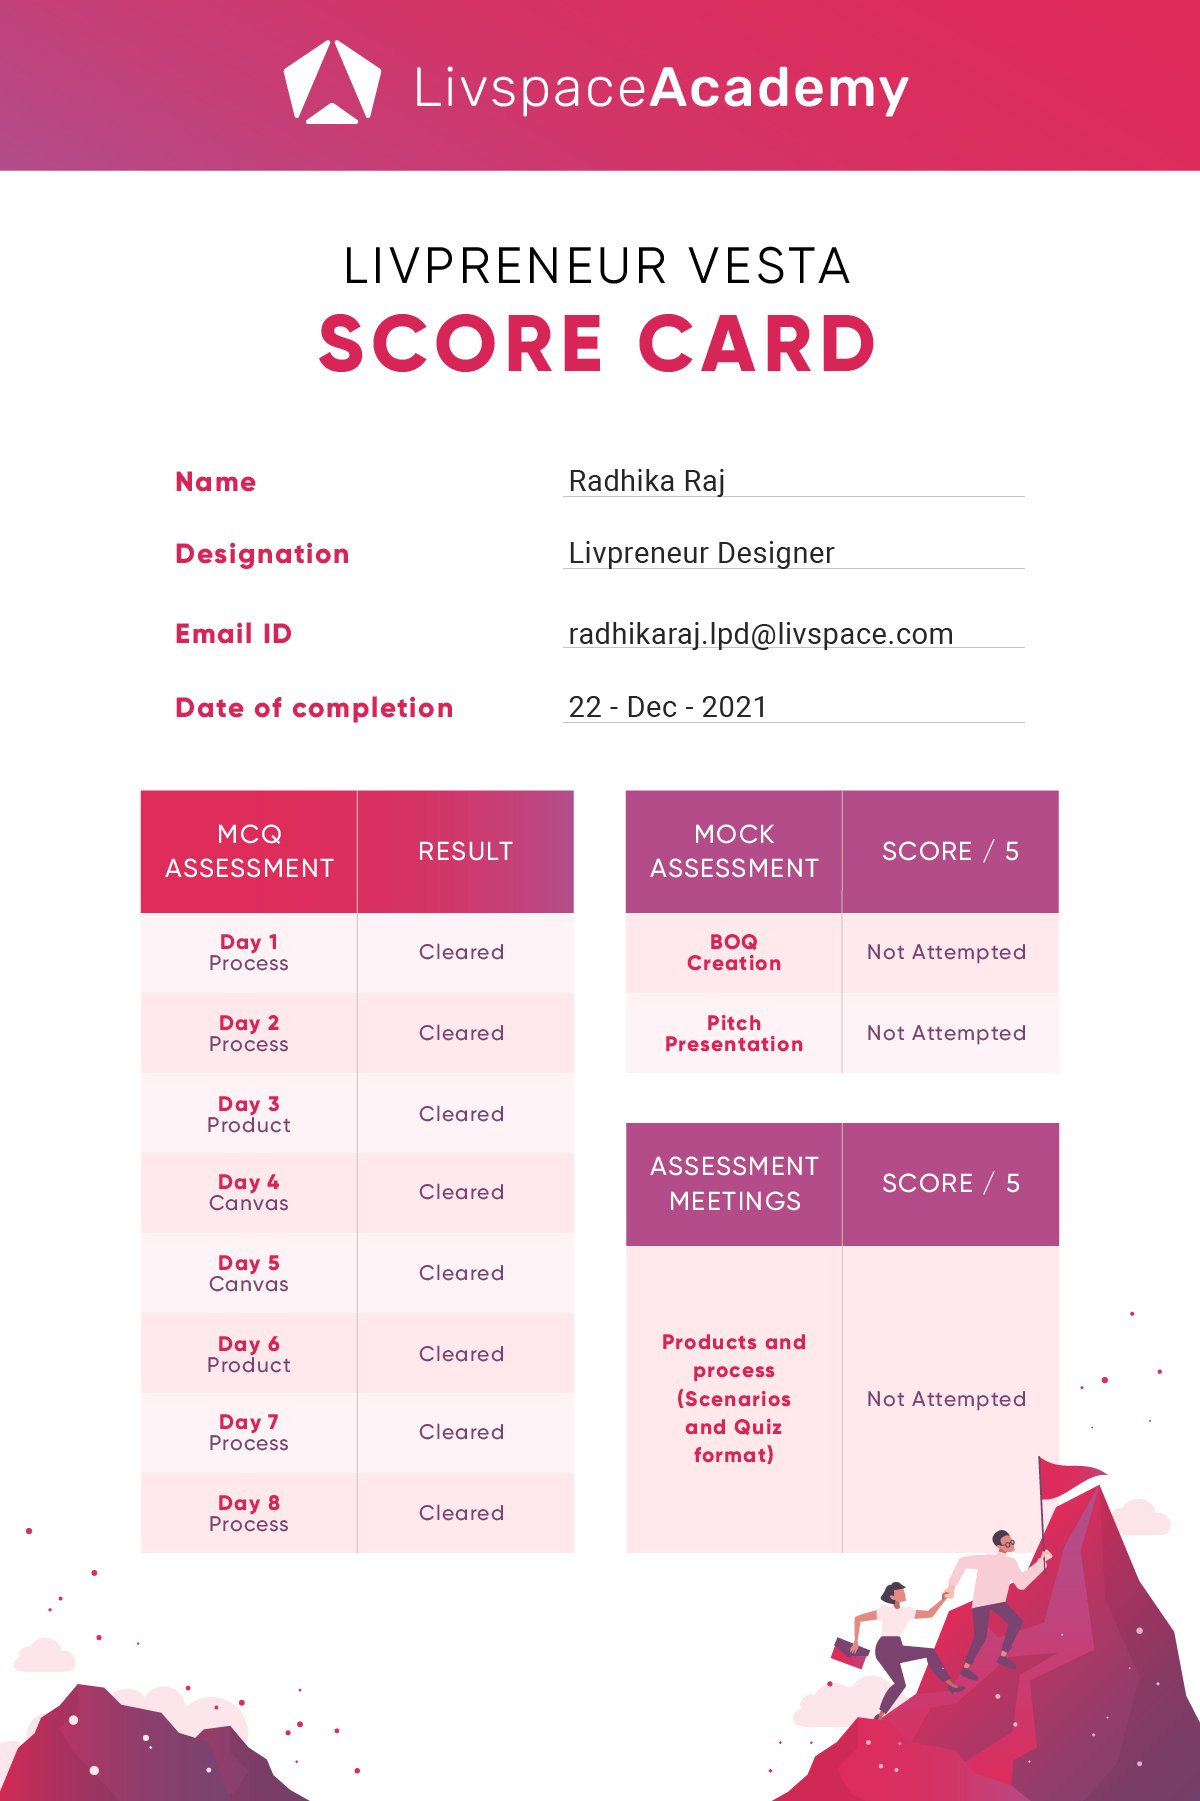 Scorecard-Vesta onboarding_Score card.jpg